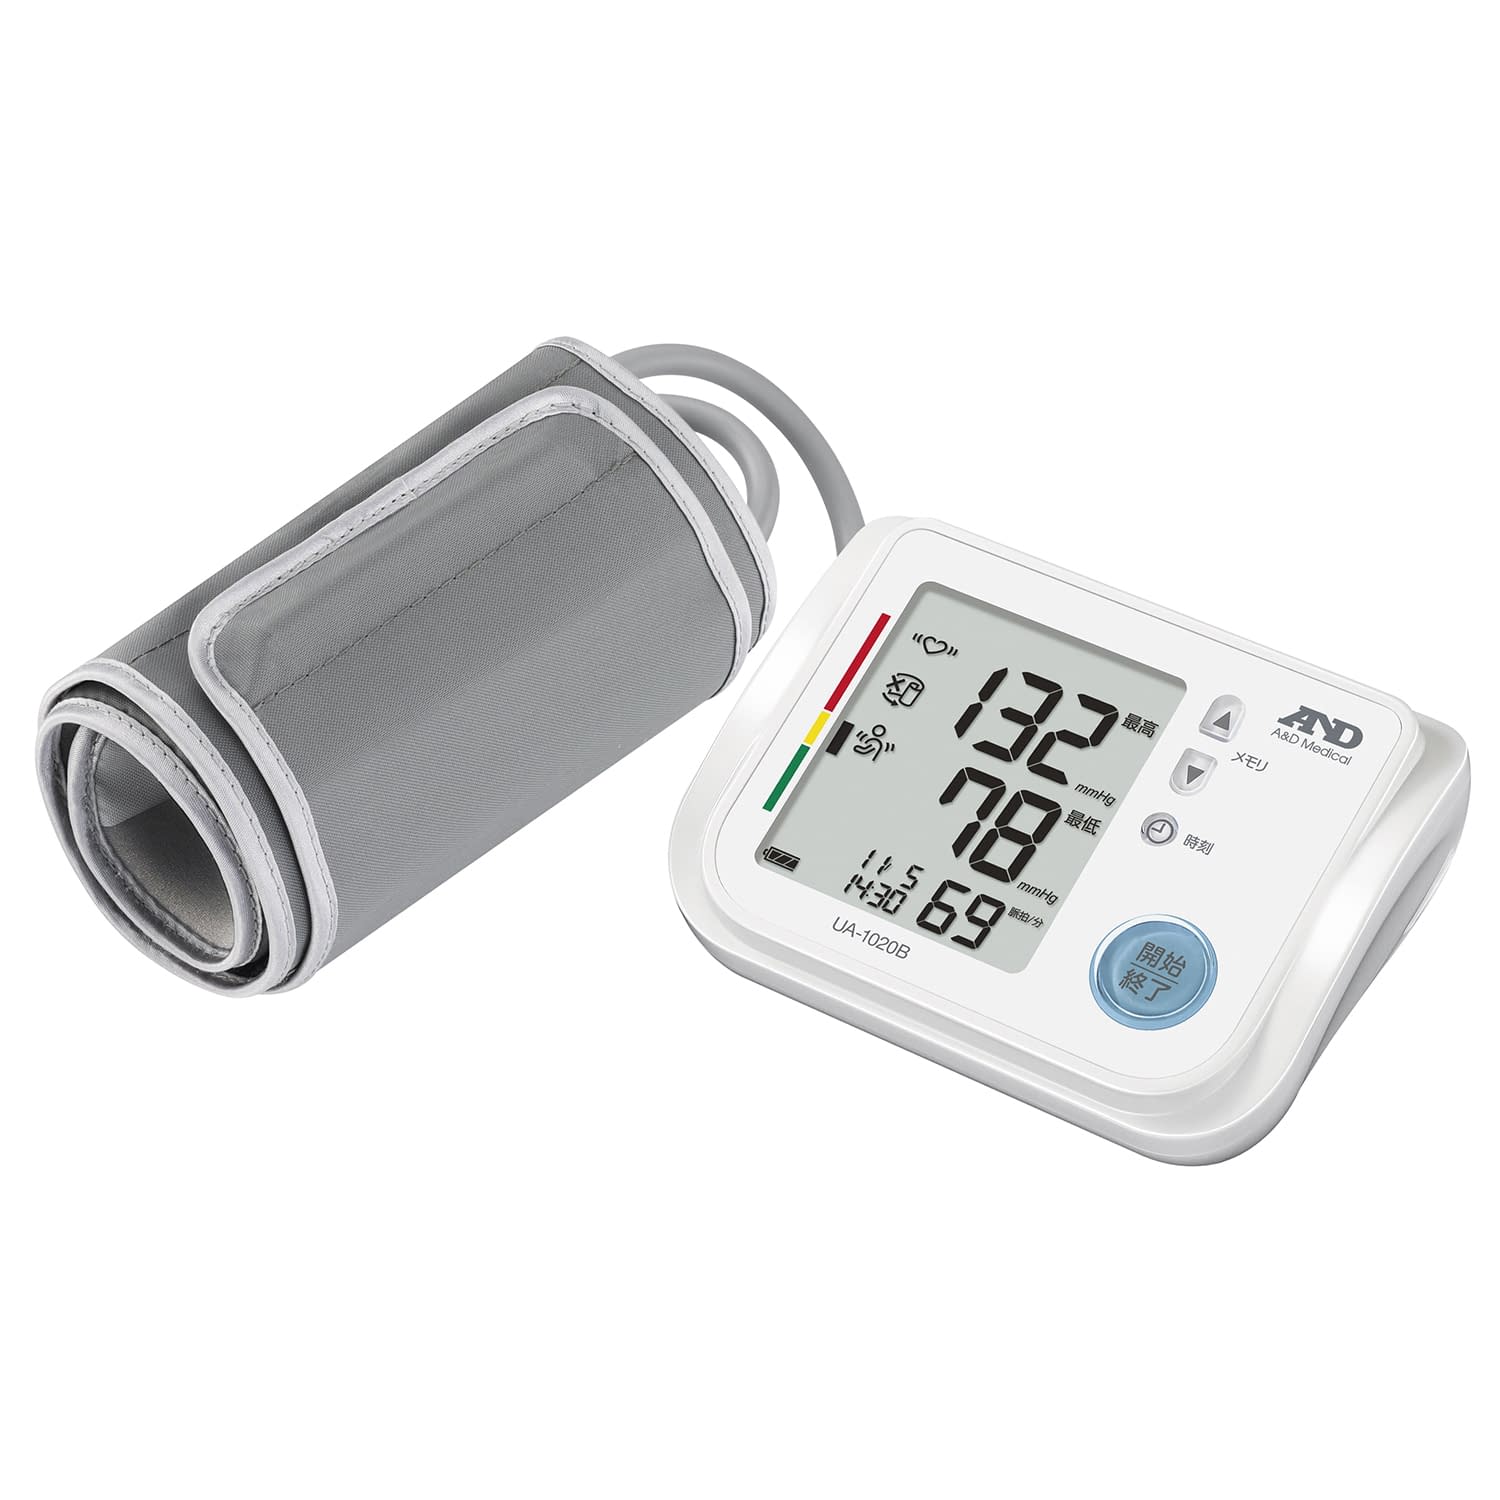 (24-5164-00)デジタル血圧計（上腕式） UA-1020B ﾃﾞｼﾞﾀﾙｹﾂｱﾂｹｲ(エー・アンド・デイ)【1台単位】【2019年カタログ商品】